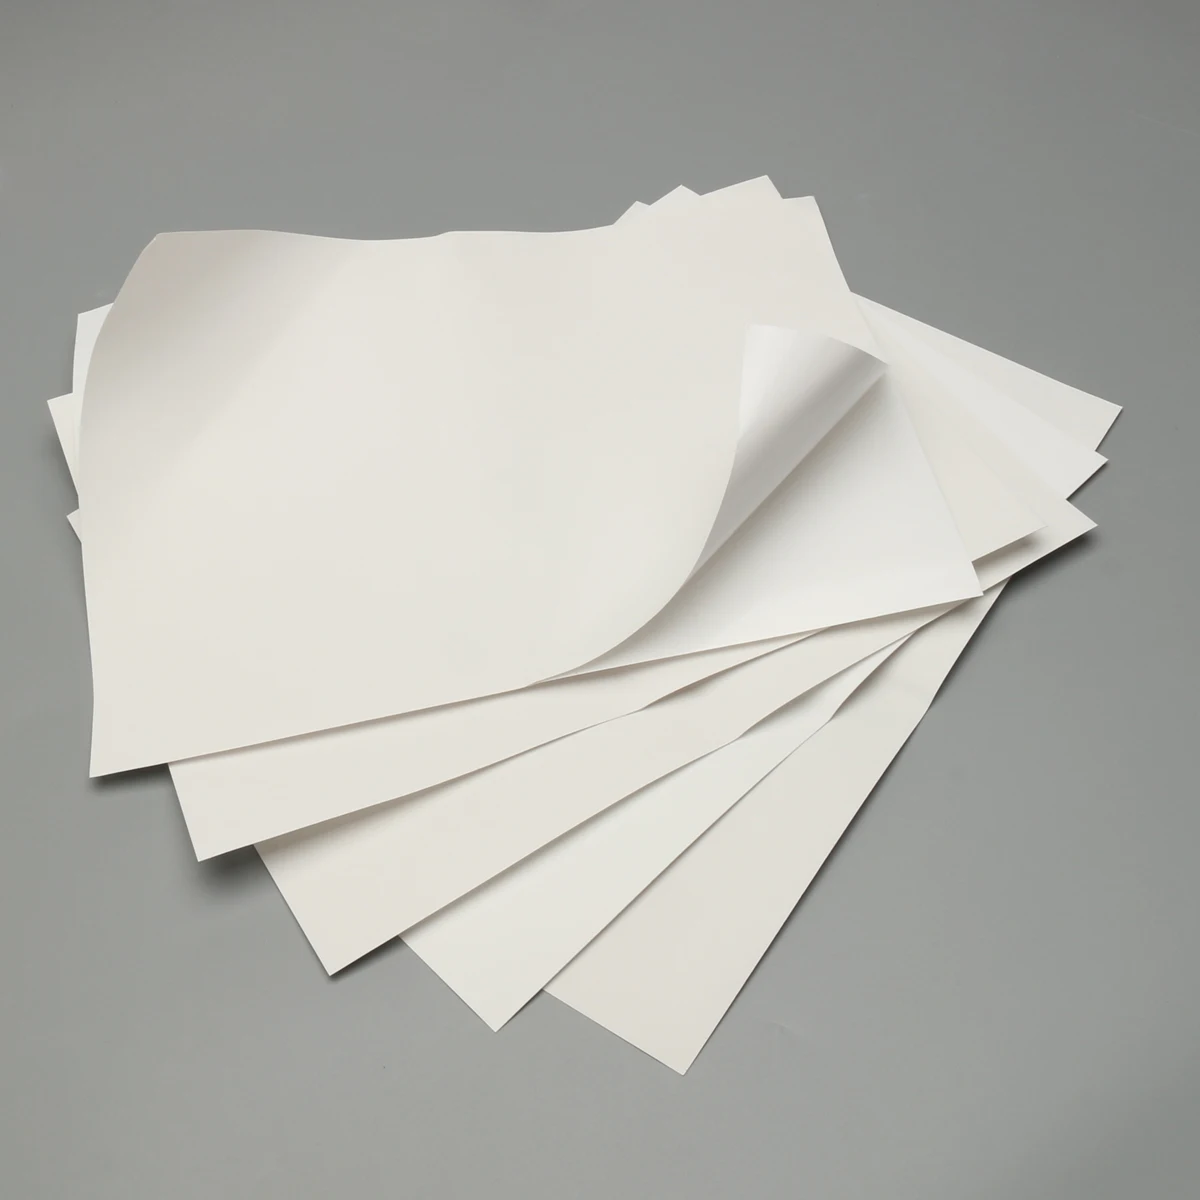 Лист бумаги. Белая бумага. Листовая бумага. Бумажный лист. Проявляющая бумага